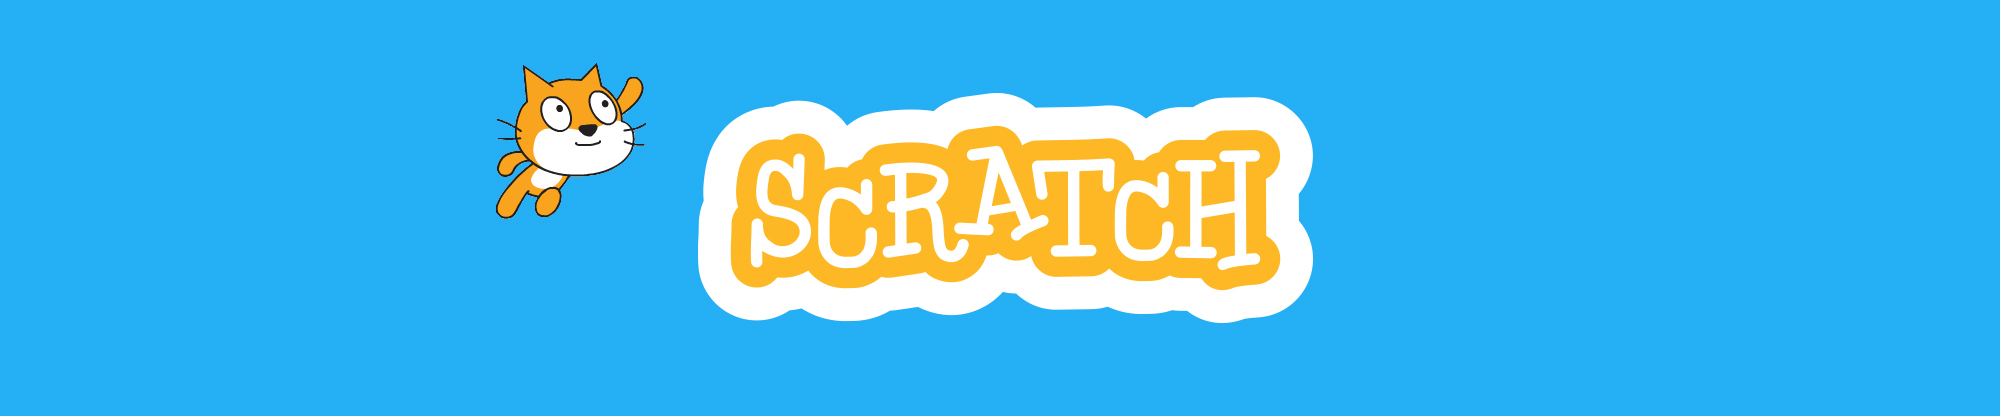 Scratch සමග පරිගණක ක්‍රීඩා නිර්මාණය | Game Development with Scratch